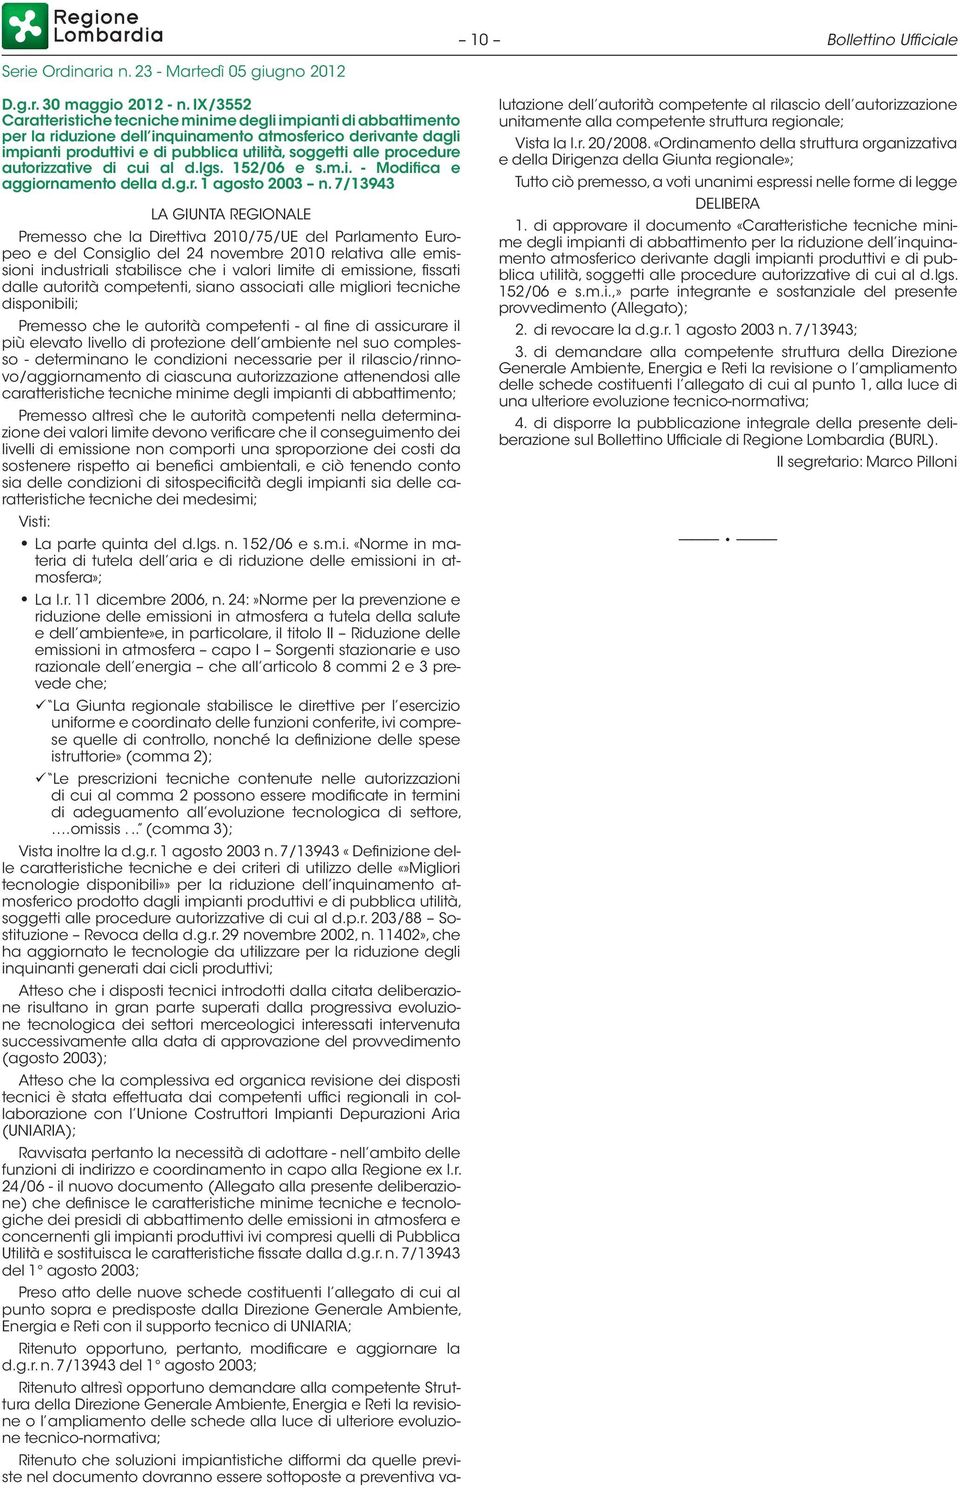 procedure autorizzative di cui al d.lgs. 152/06 e s.m.i. - Modifica e aggiornamento della d.g.r. 1 agosto 2003 n.